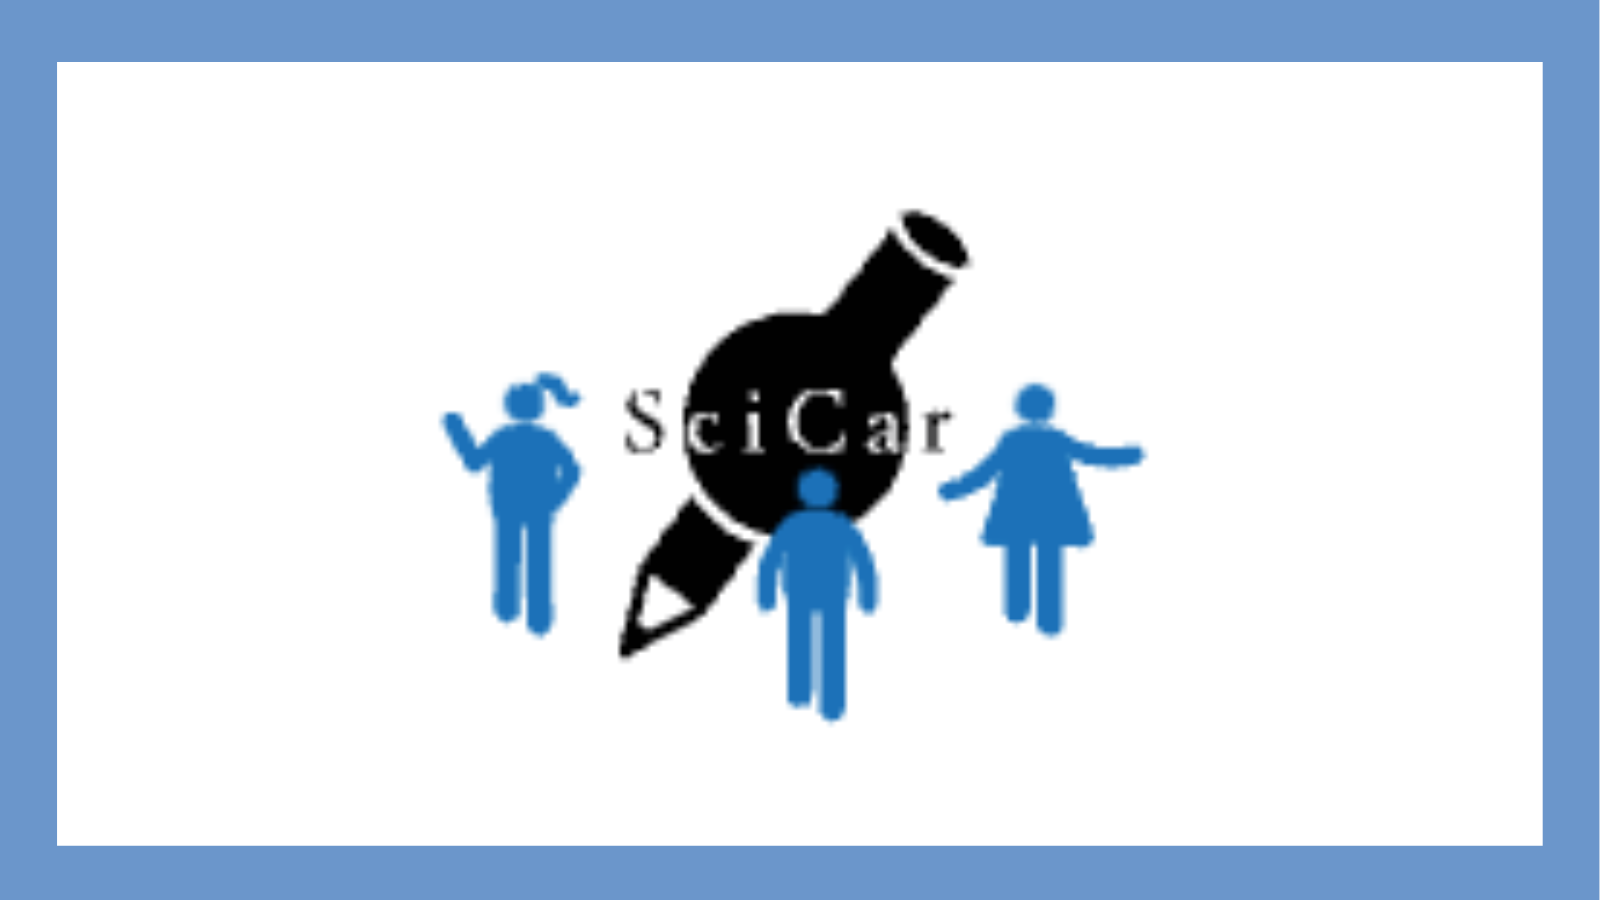 SciCar logo